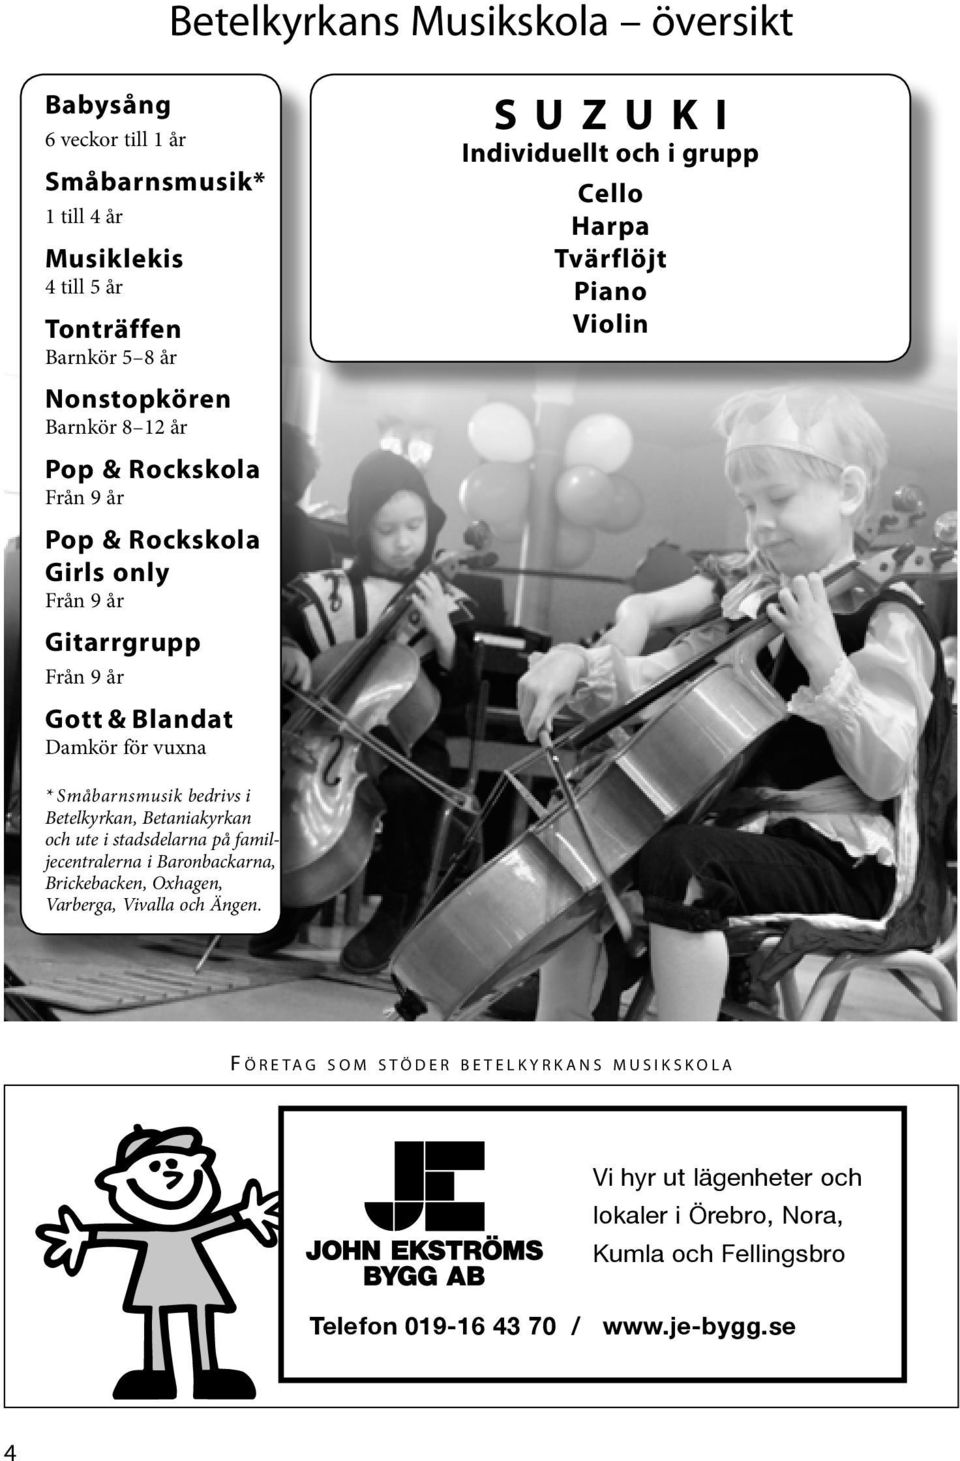 Violin * Småbarnsmusik bedrivs i Betelkyrkan, Betaniakyrkan och ute i stadsdelarna på familjecentralerna i Baronbackarna, Brickebacken, Oxhagen, Varberga, Vivalla och Ängen.